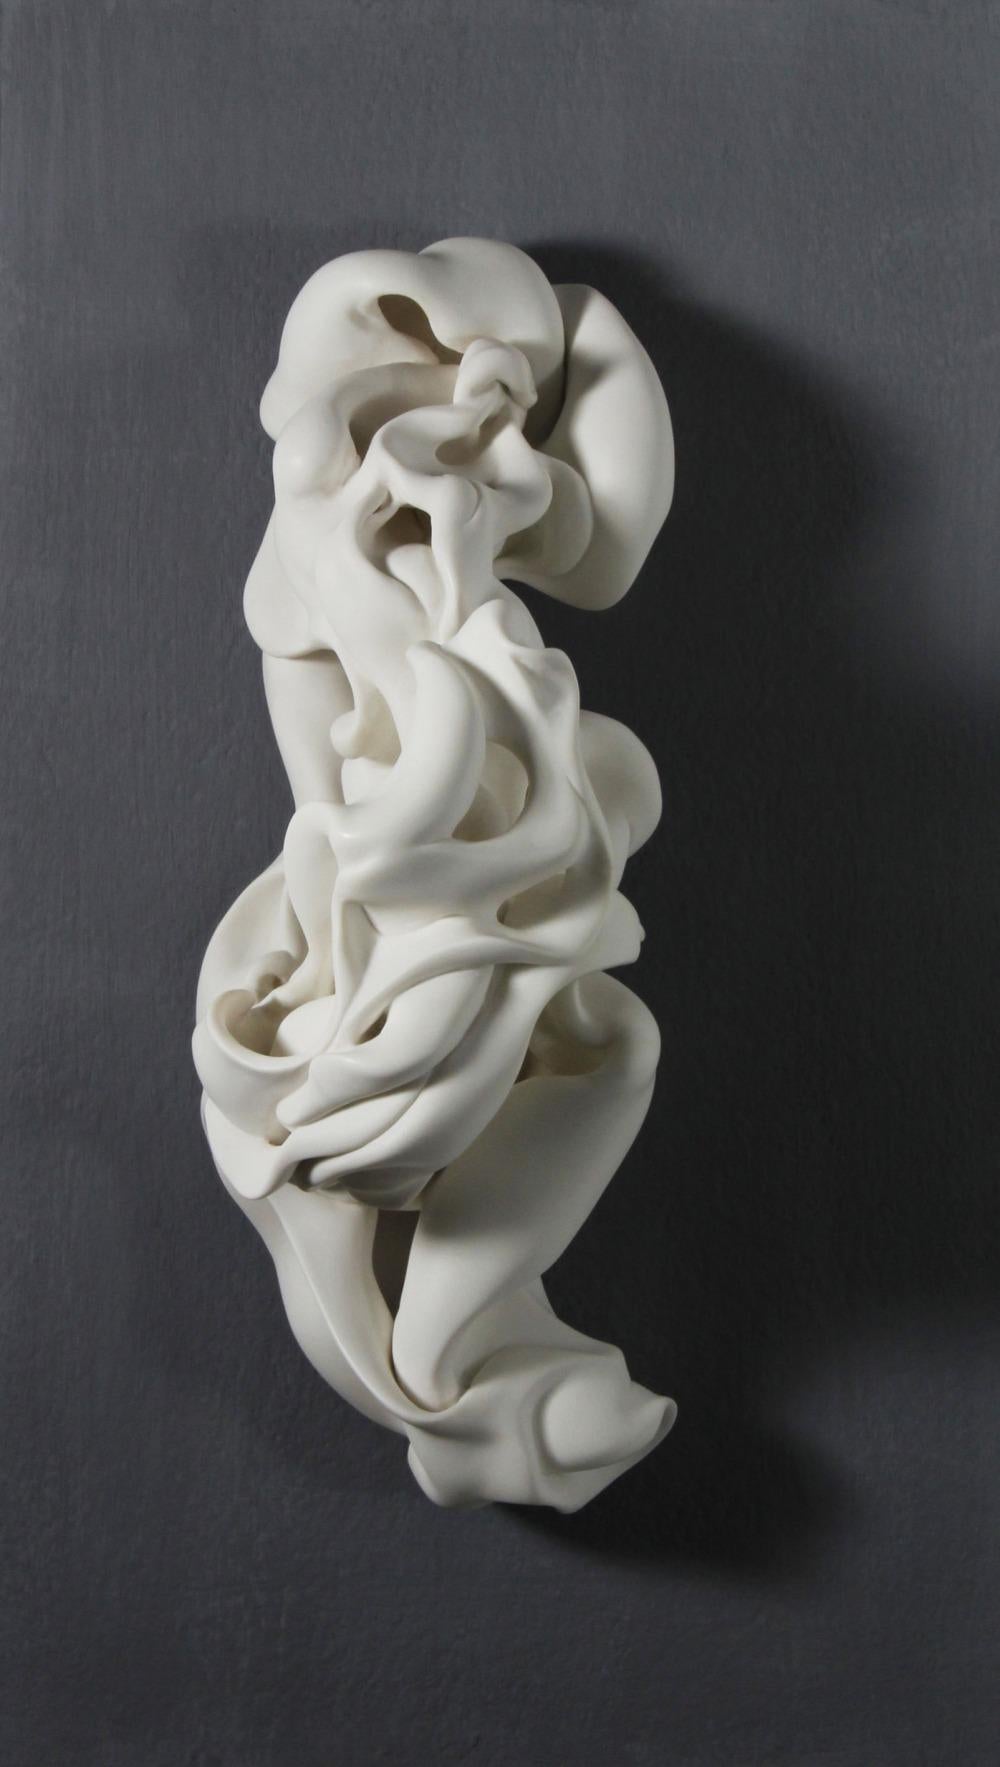 Motion est une sculpture unique de l'artiste contemporaine Sharon Brill. Il s'agit d'une sculpture en porcelaine altérée et sablée, coulée au tour, dont les dimensions sont de 36 × 15 × 13 cm (14,2 × 5,9 × 5,1 in).
Cette sculpture est une pièce